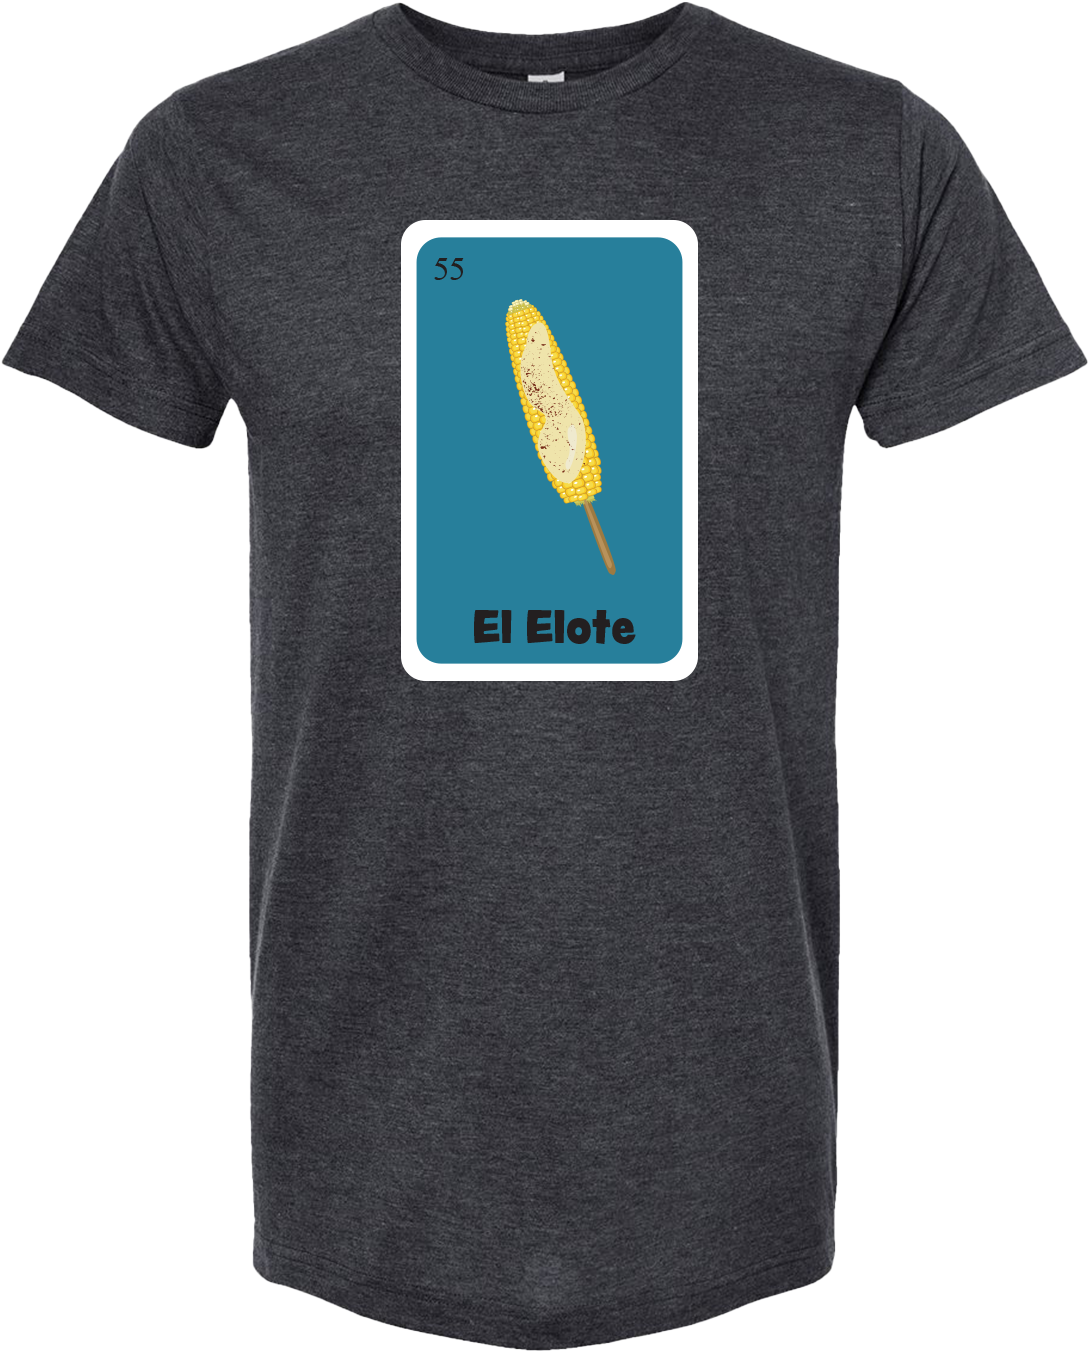 El Elote Graphic T-Shirt